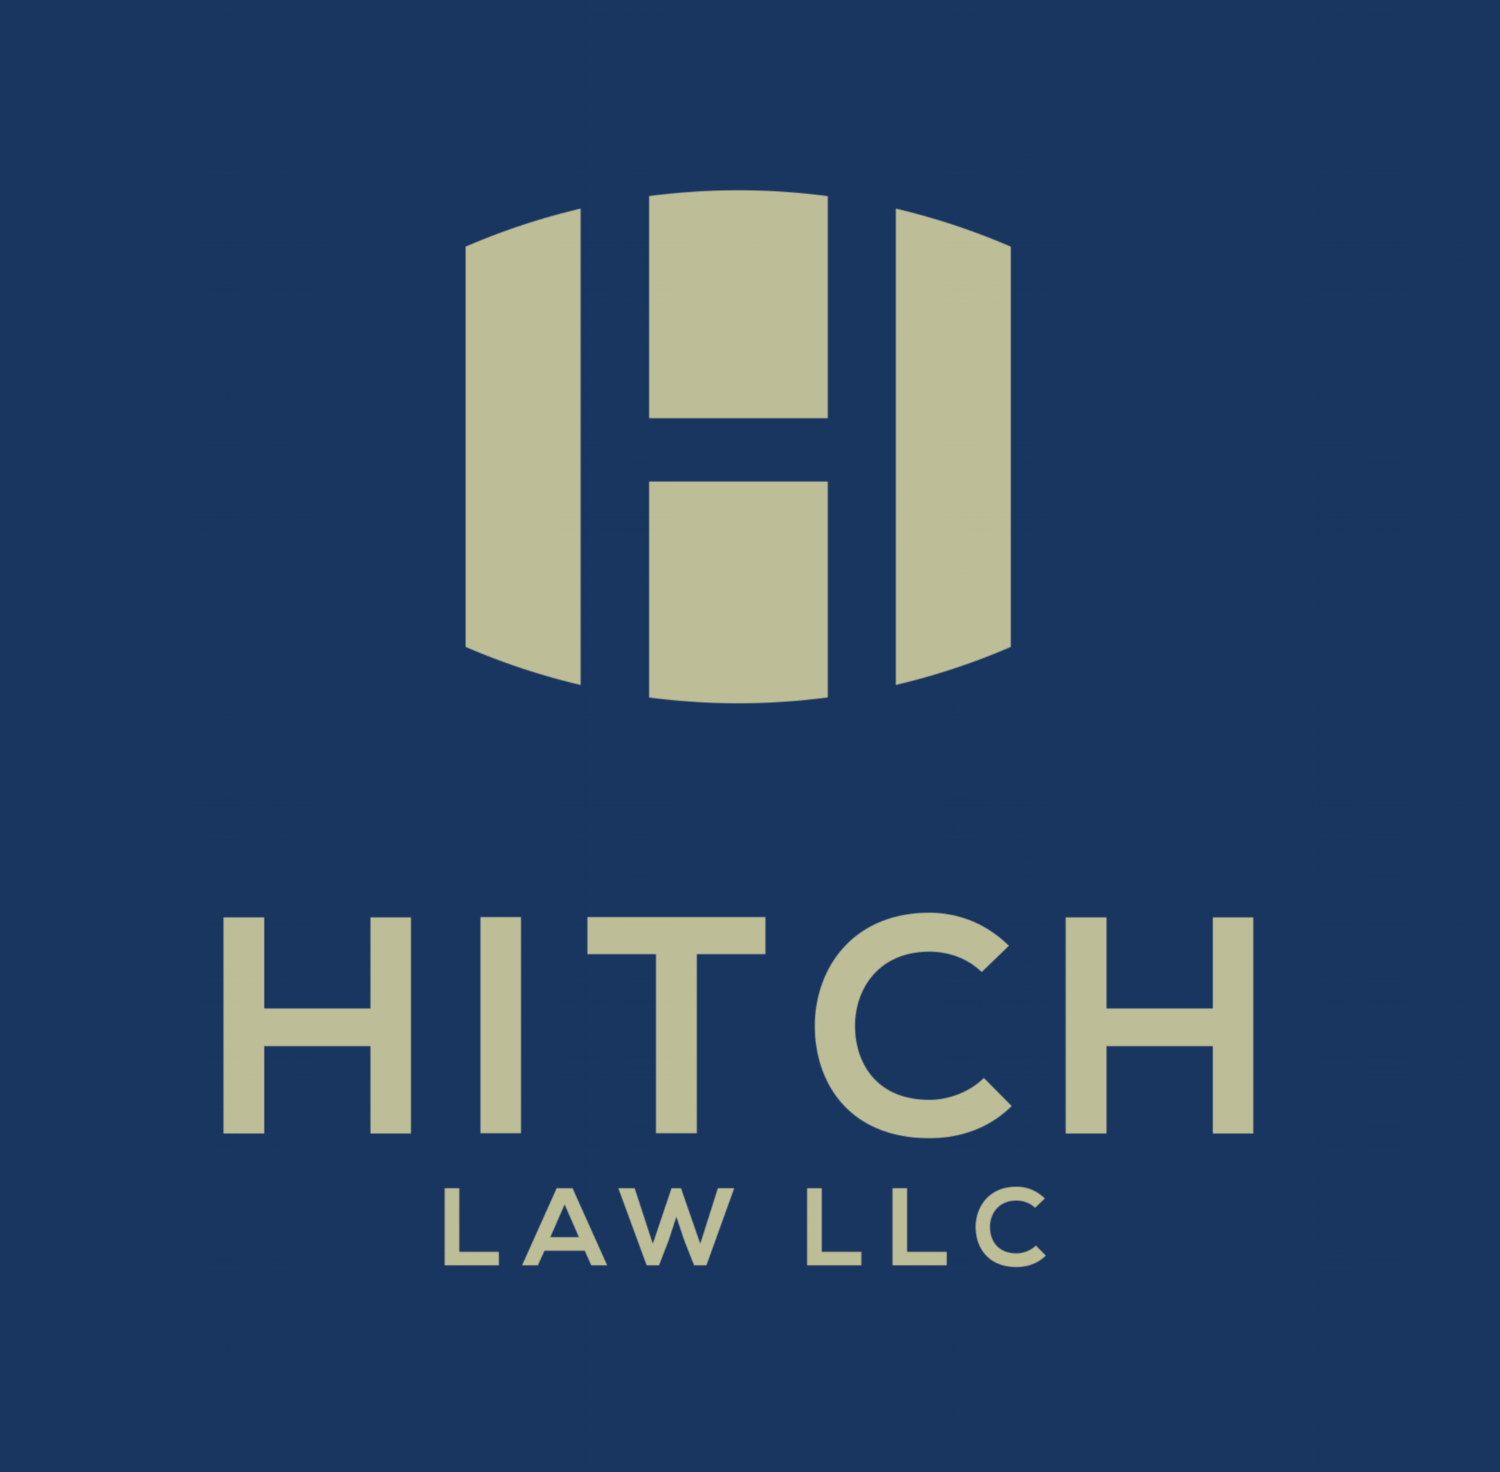 Hitch Law LLC 